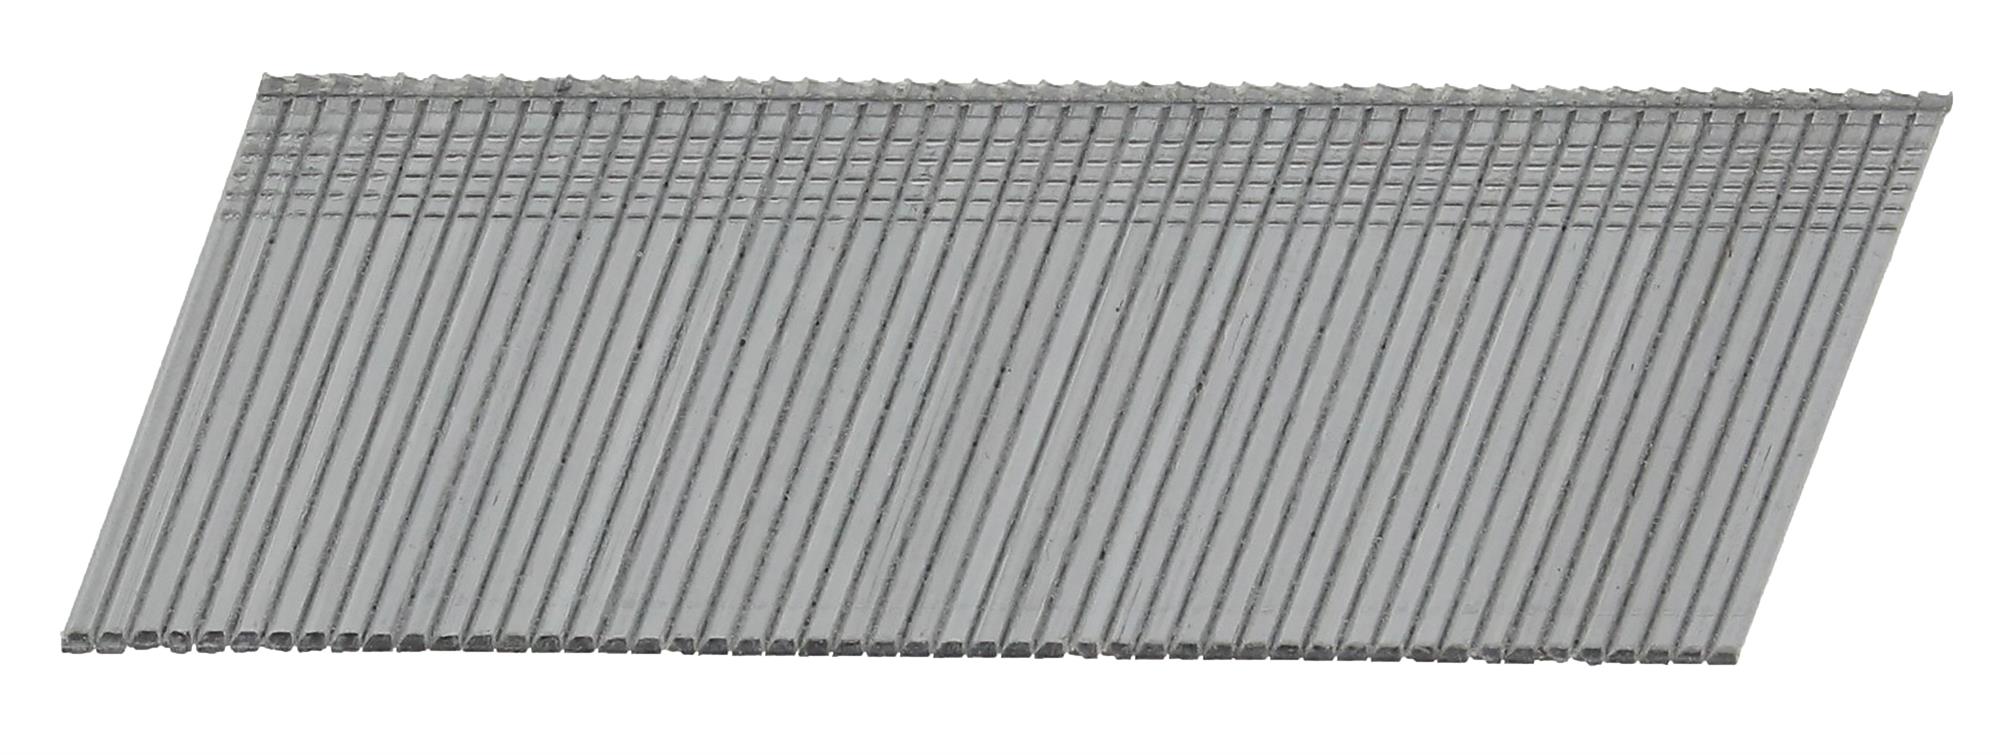 Hřebíky FeZn Paslode AF16 20° hladké 1,6×32 mm 2 000 ks